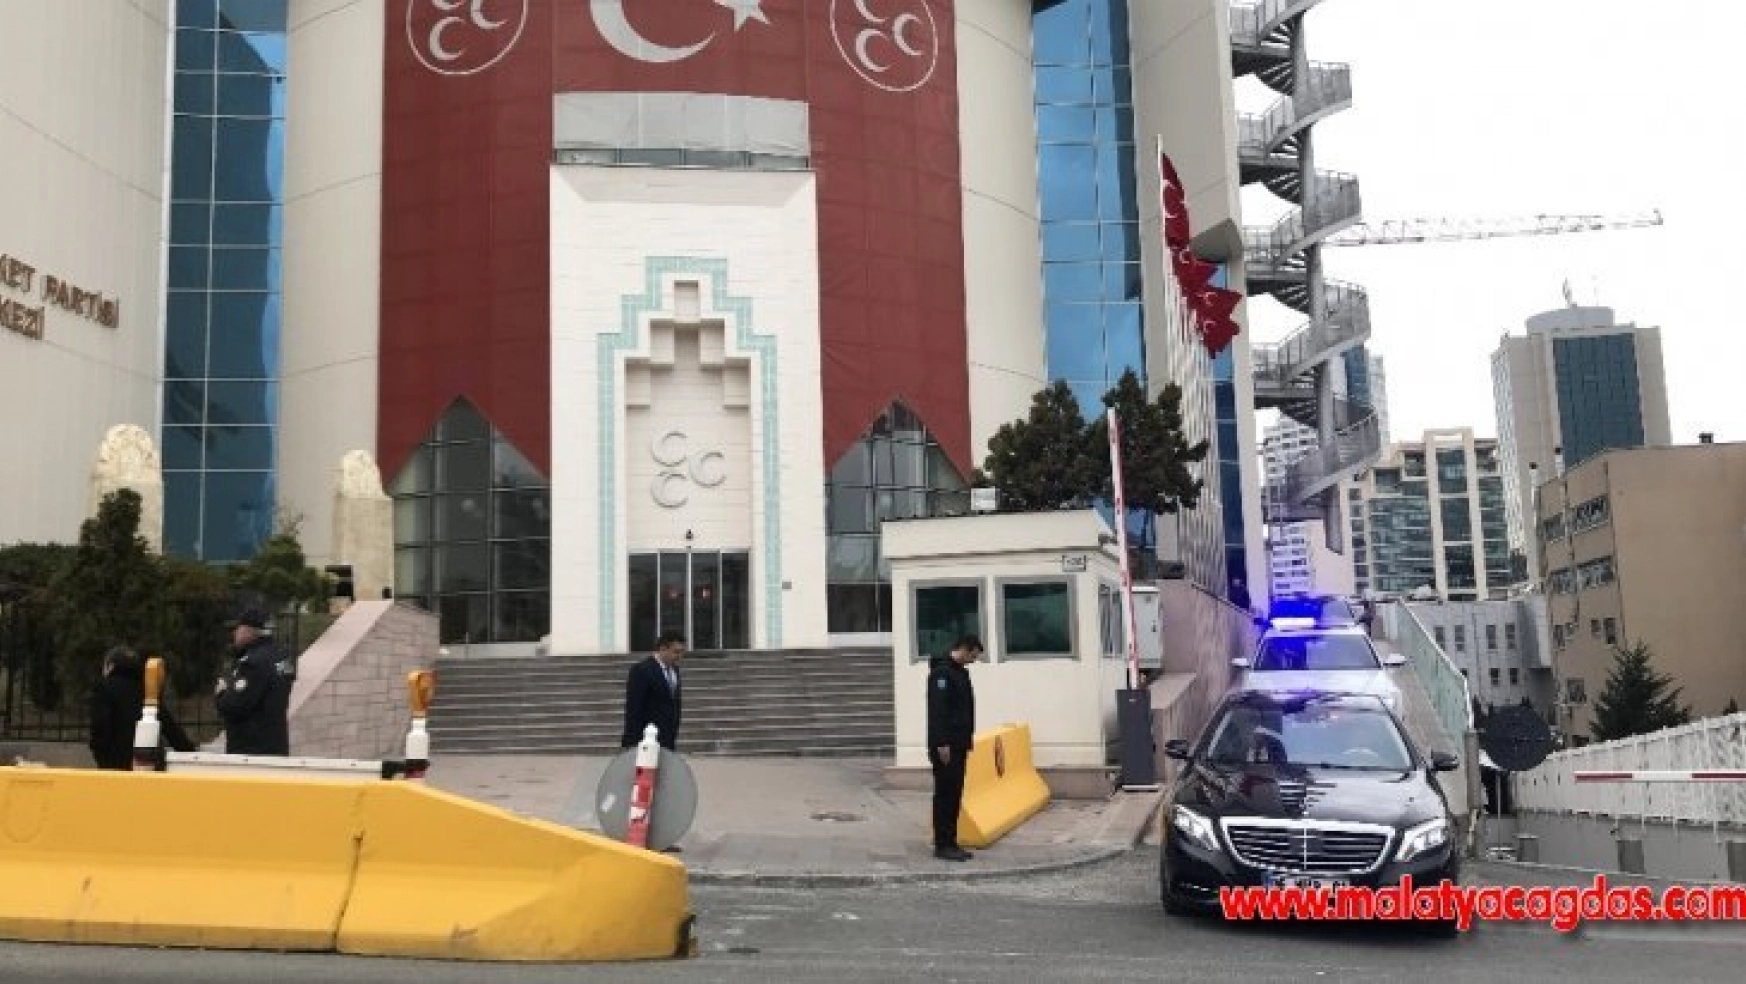 MHP Genel Başkanı Devlet Bahçeli, Cumhurbaşkanı Recep Tayyip Erdoğan'la görüşmek üzere parti binasından ayrıldı.